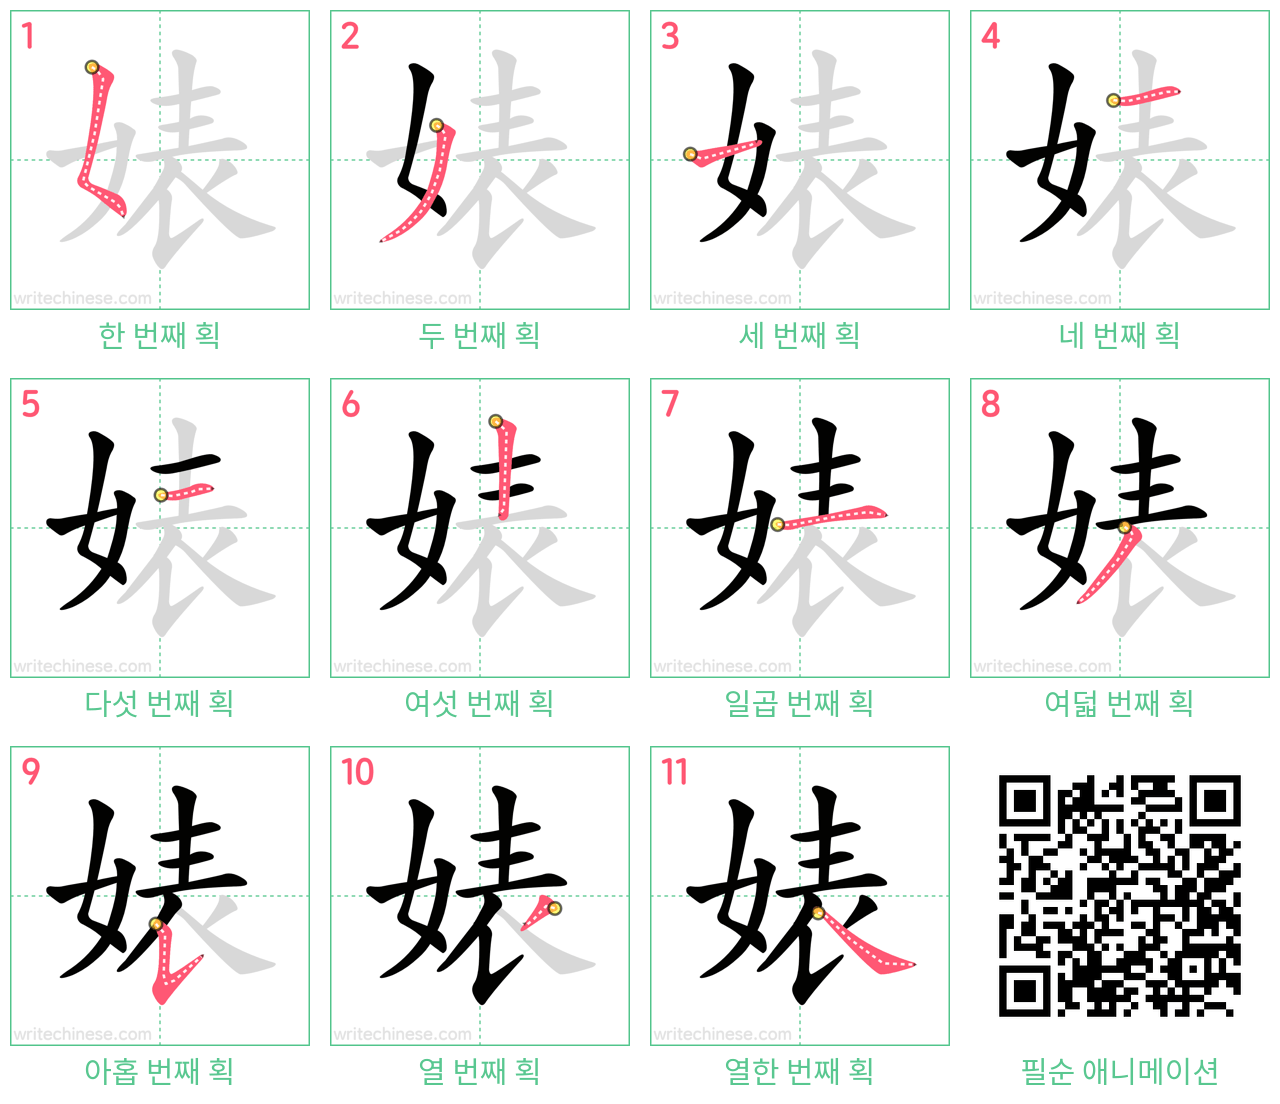 婊 step-by-step stroke order diagrams